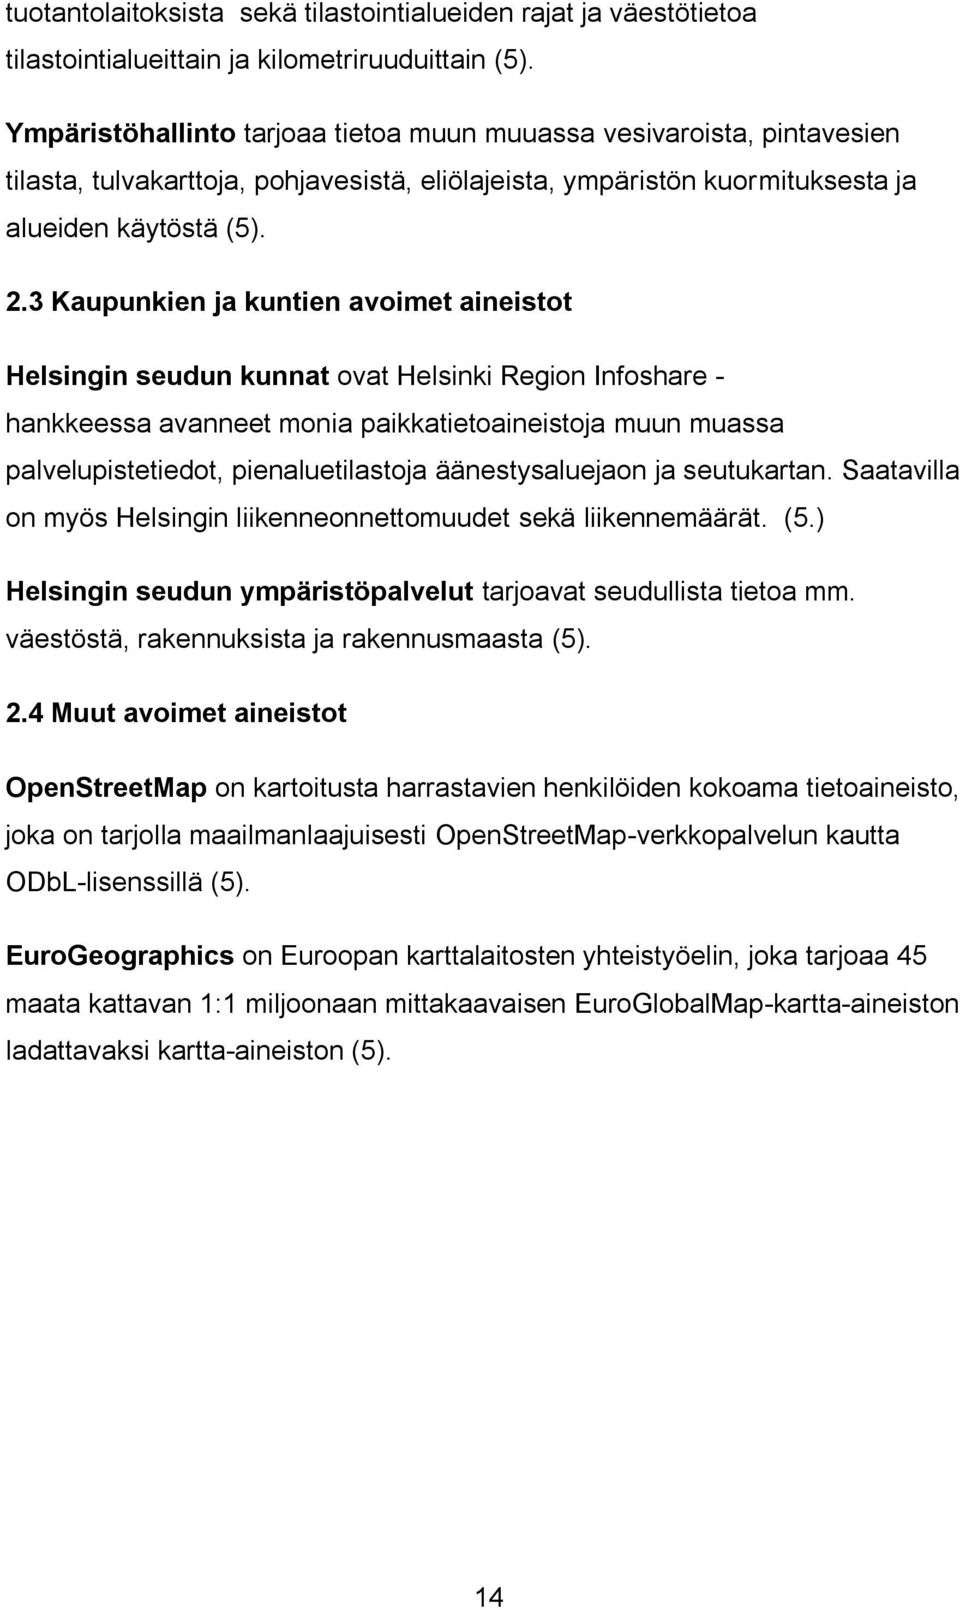 3 Kaupunkien ja kuntien avoimet aineistot Helsingin seudun kunnat ovat Helsinki Region Infoshare - hankkeessa avanneet monia paikkatietoaineistoja muun muassa palvelupistetiedot, pienaluetilastoja